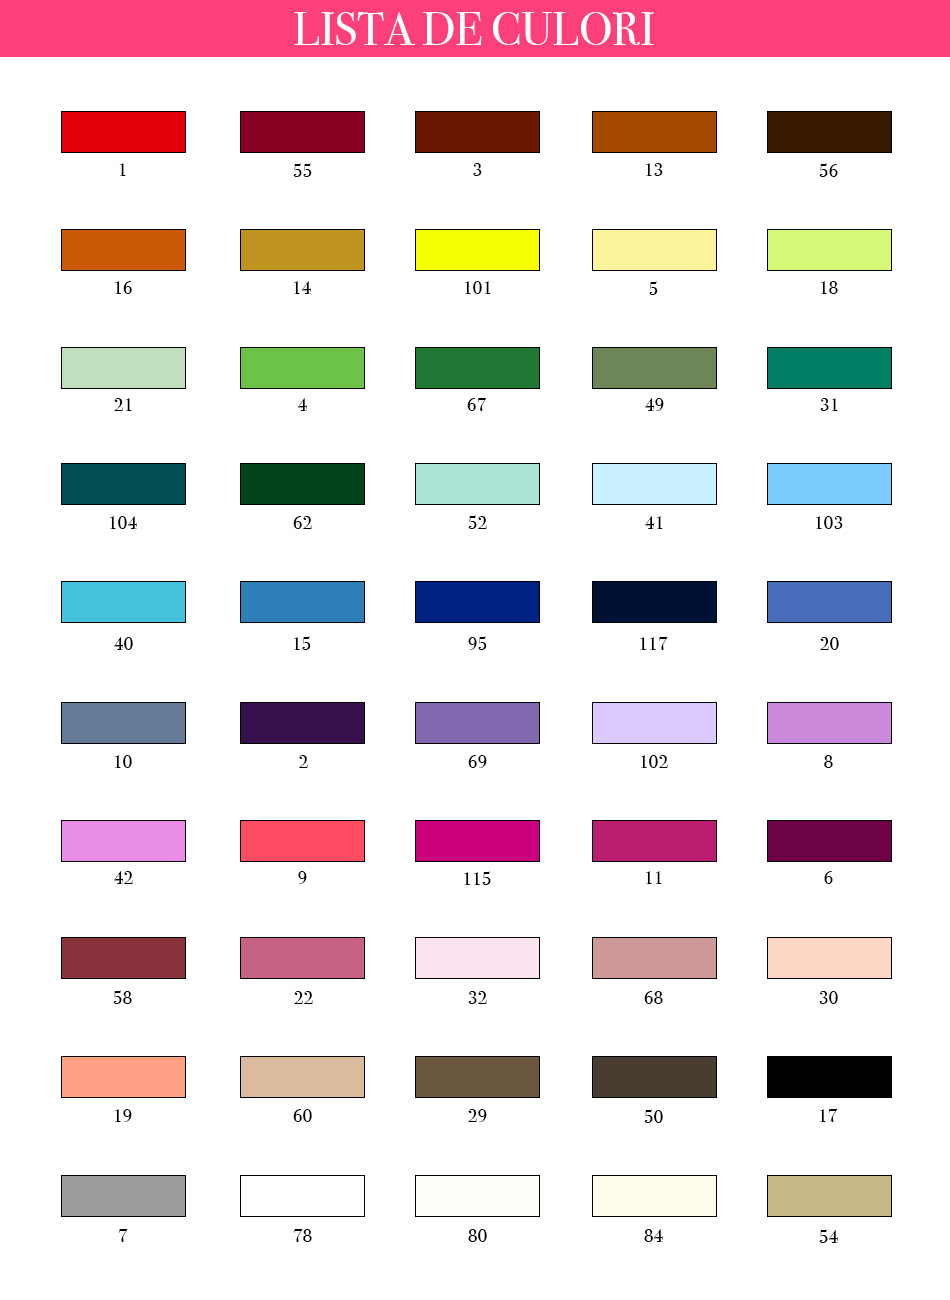 lista de culori